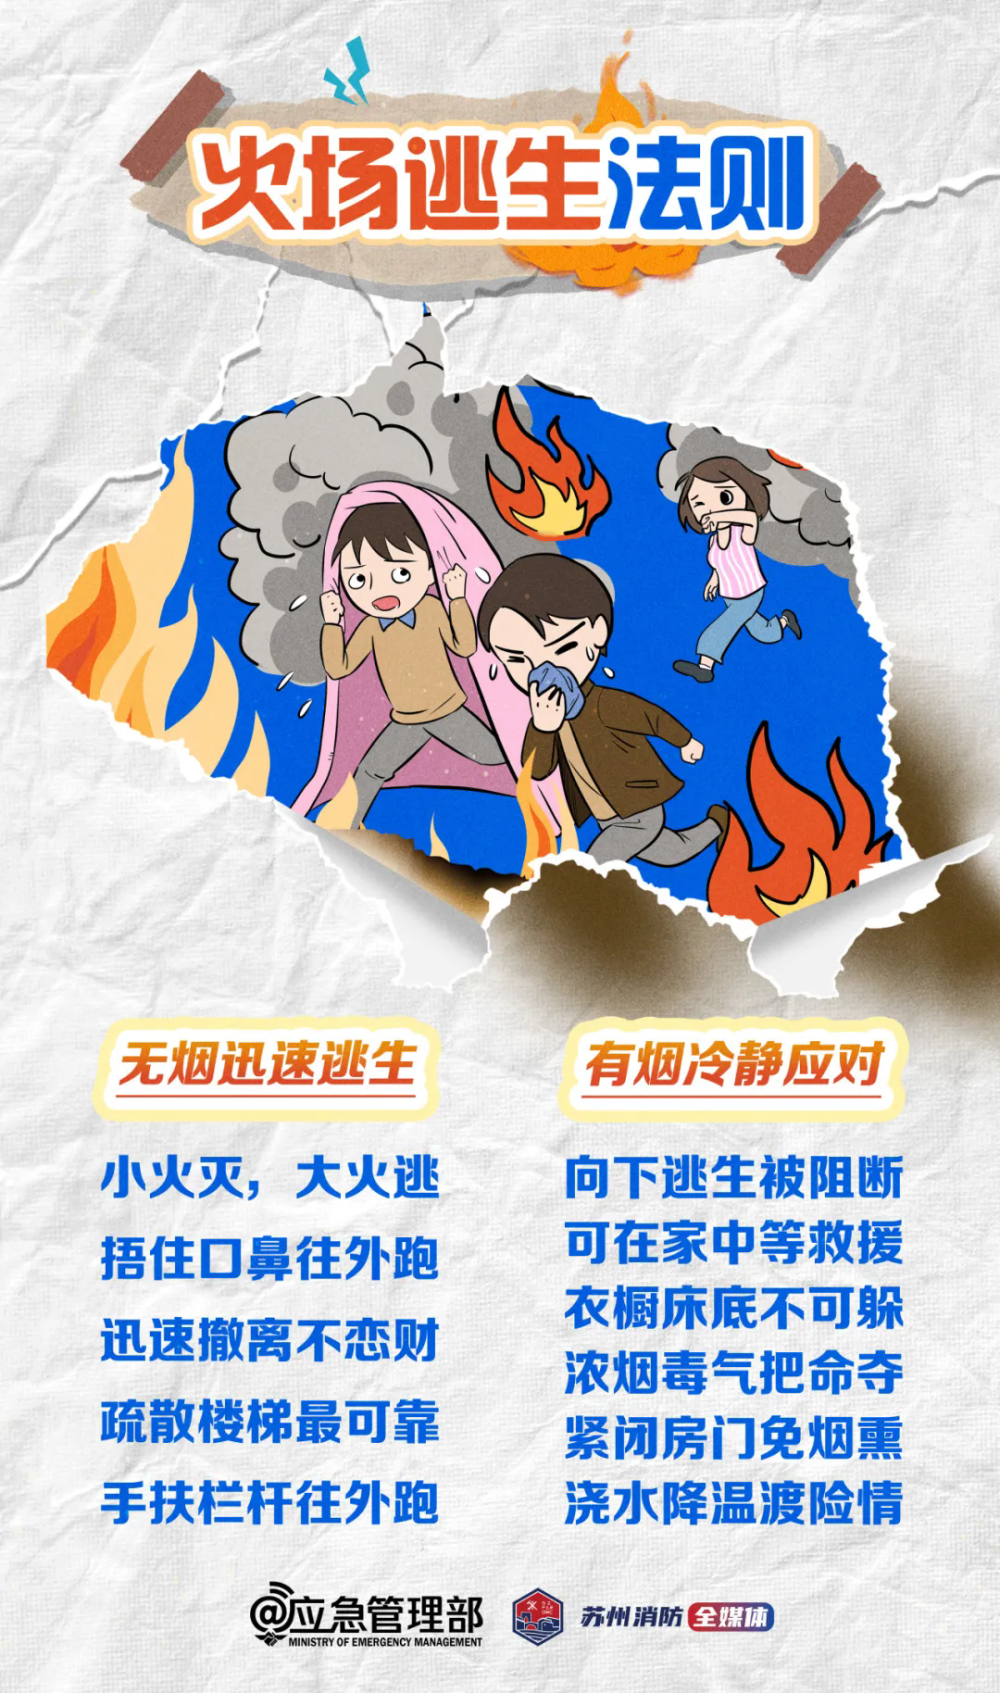 高层小区突然起火,两女孩教科书级自救!火灾如何逃生自救?